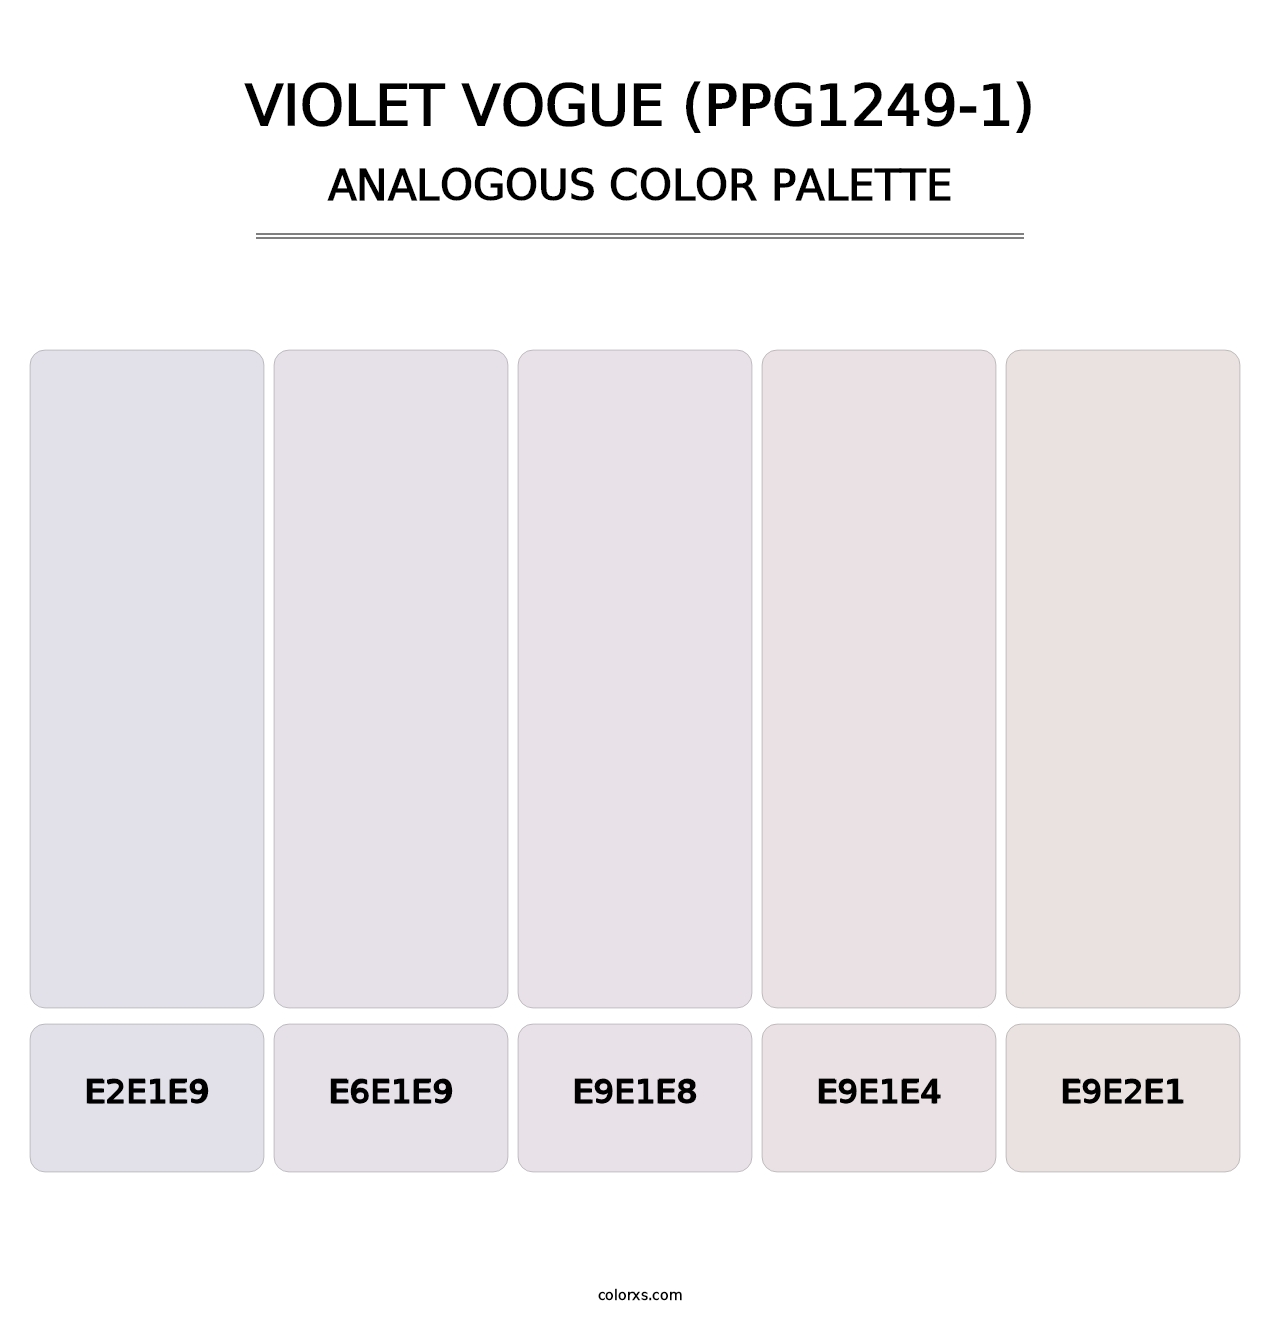 Violet Vogue (PPG1249-1) - Analogous Color Palette